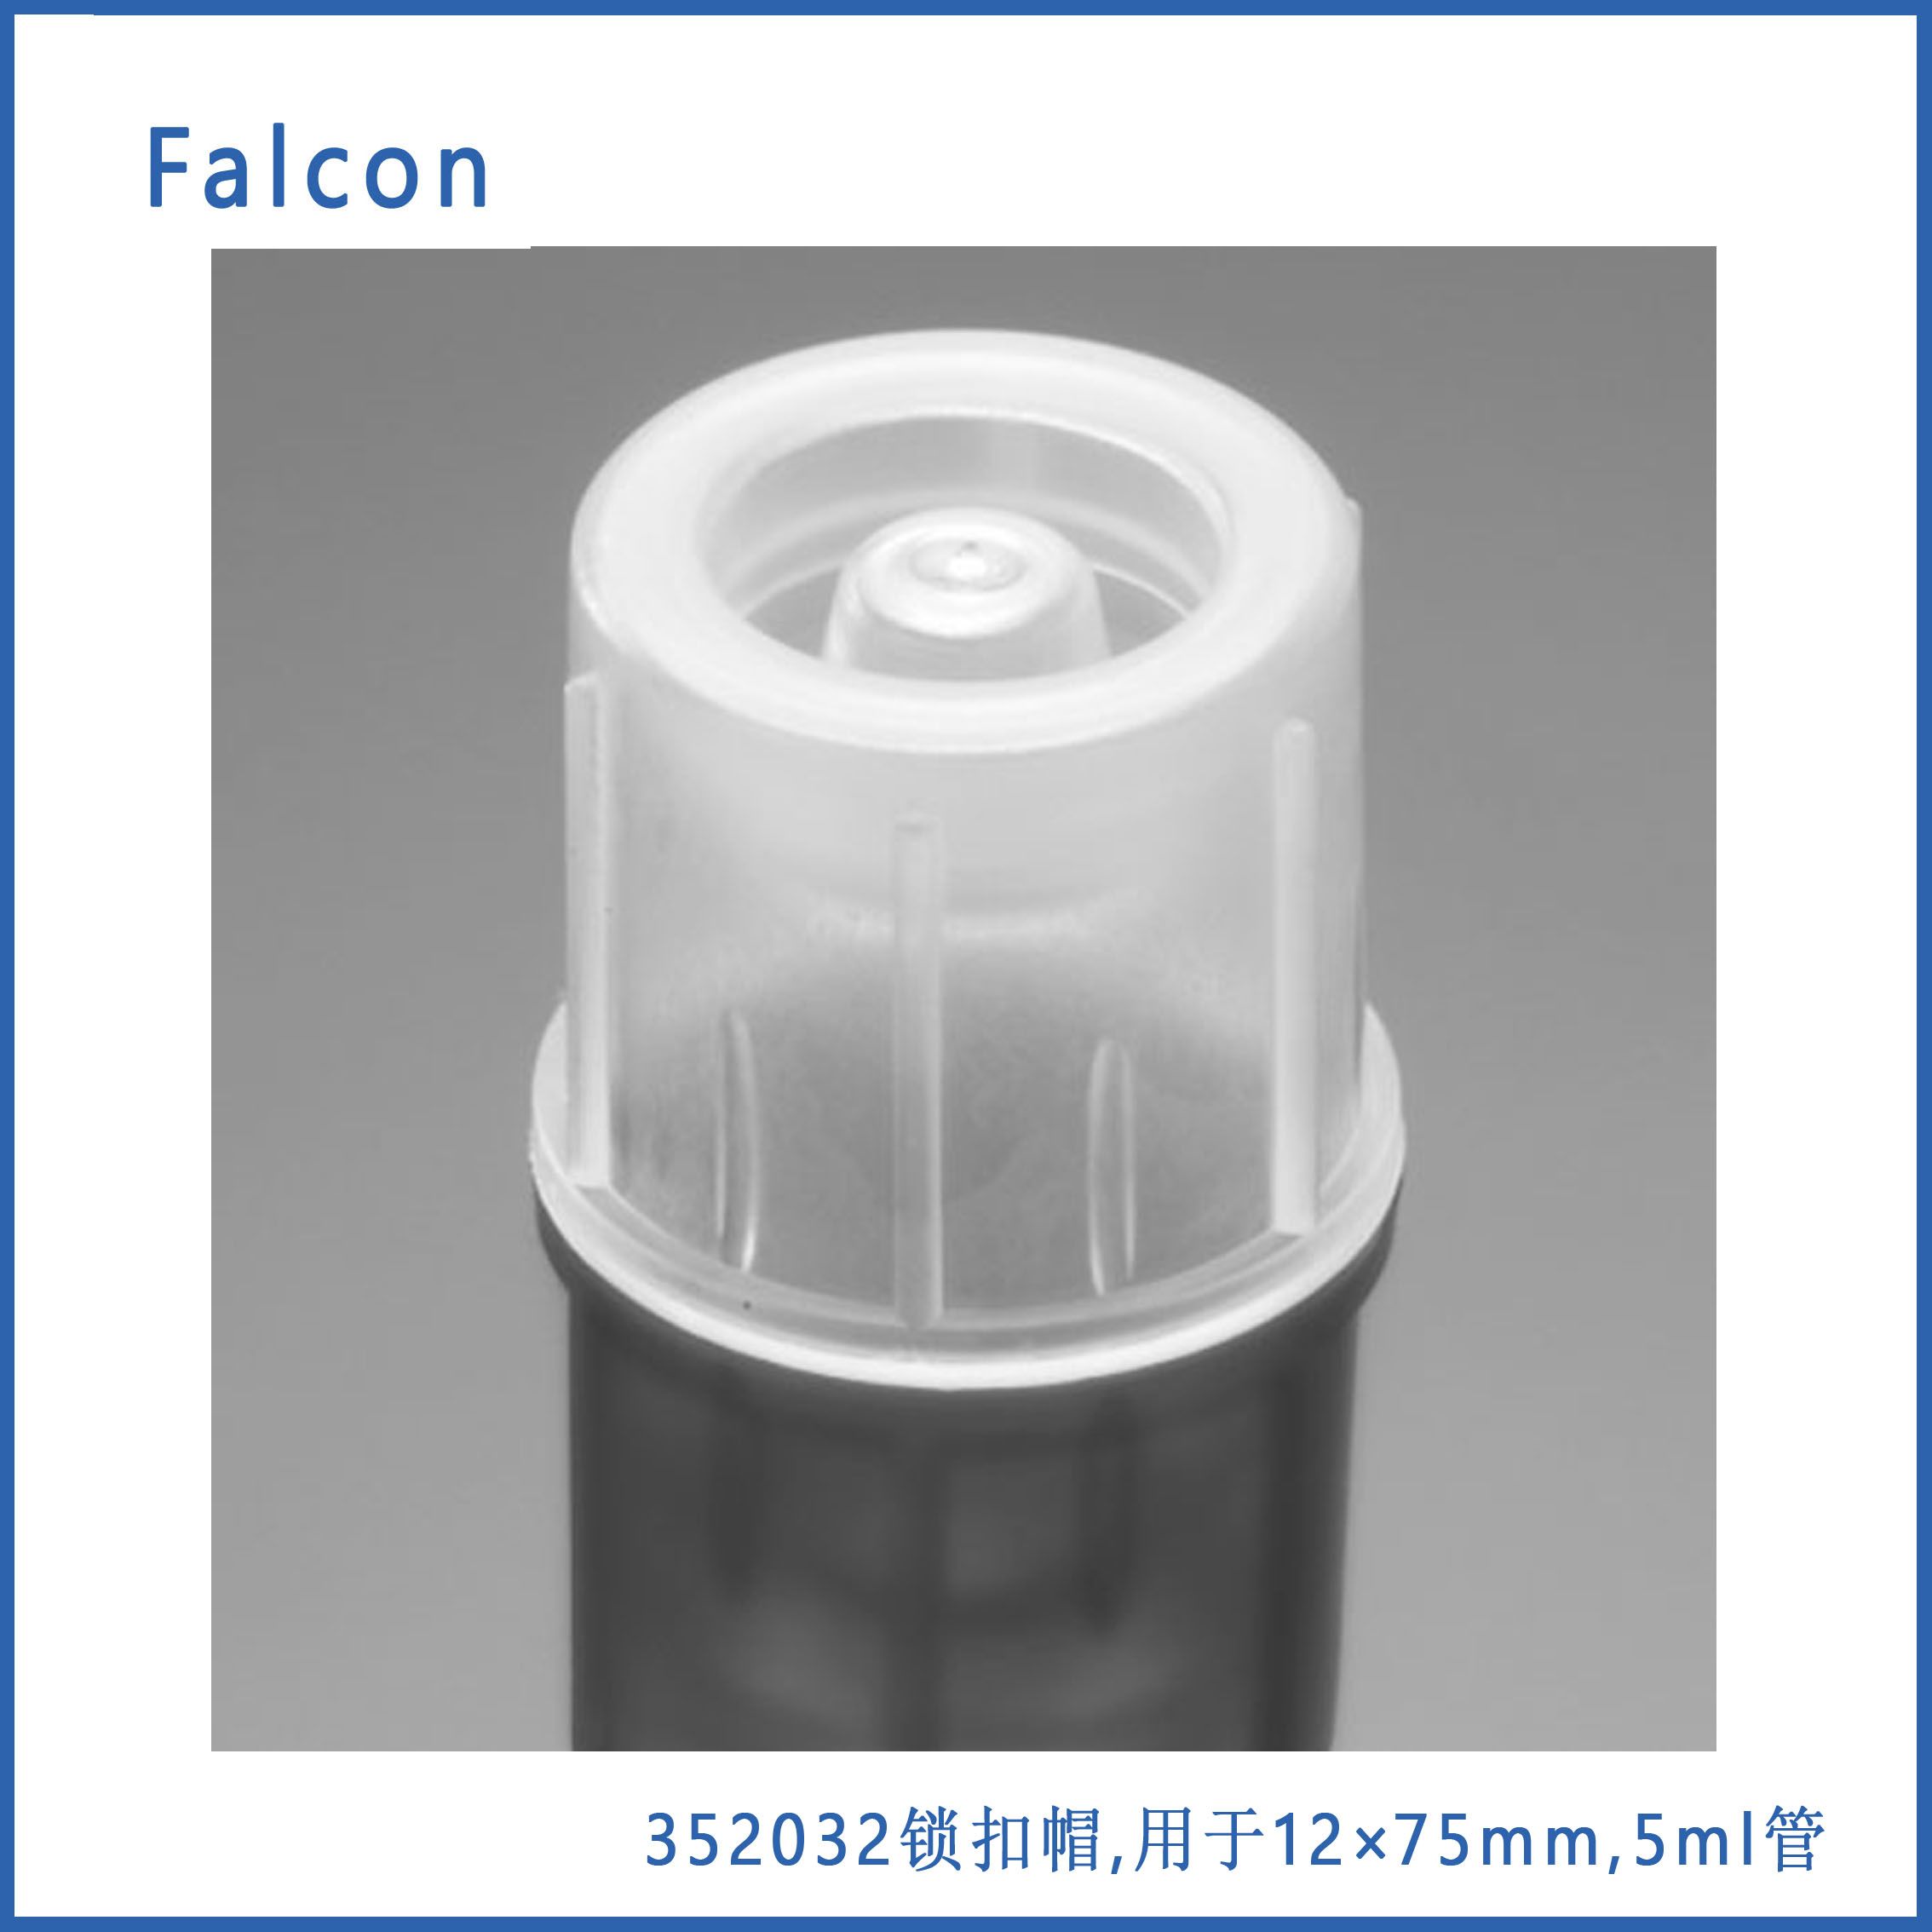 Corning Falcon 352032锁扣帽,用于12×75mm,  5ml管,500个/包,4包/箱，现货